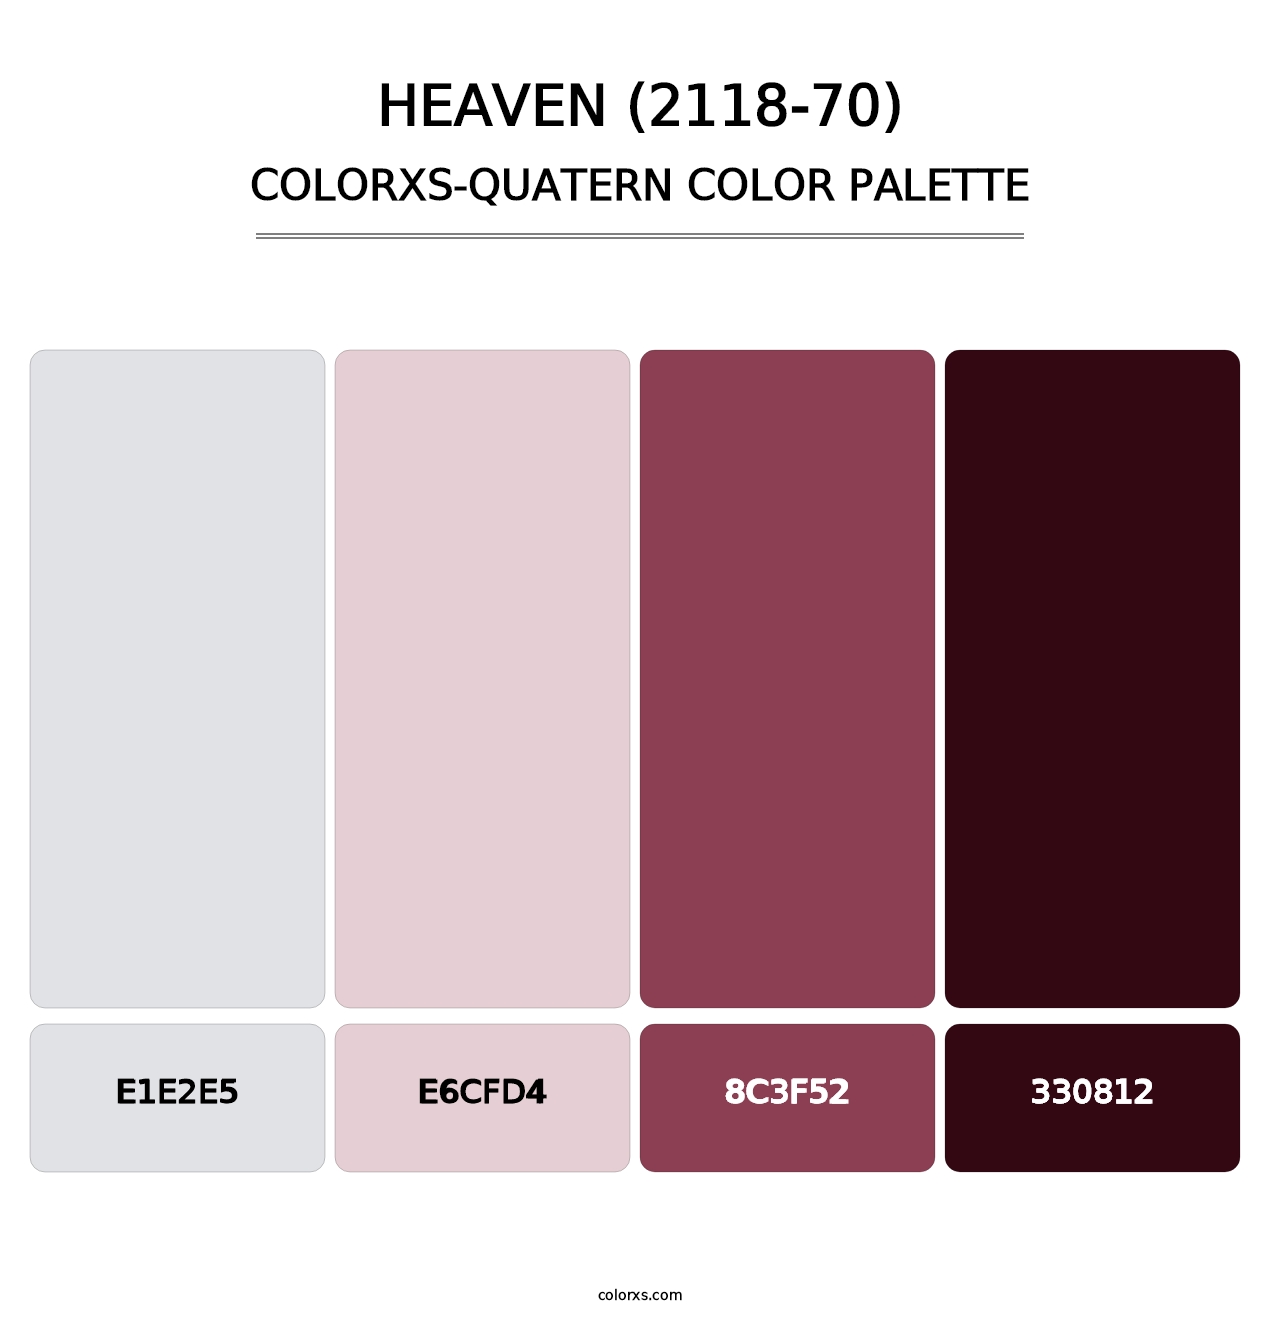 Heaven (2118-70) - Colorxs Quatern Palette